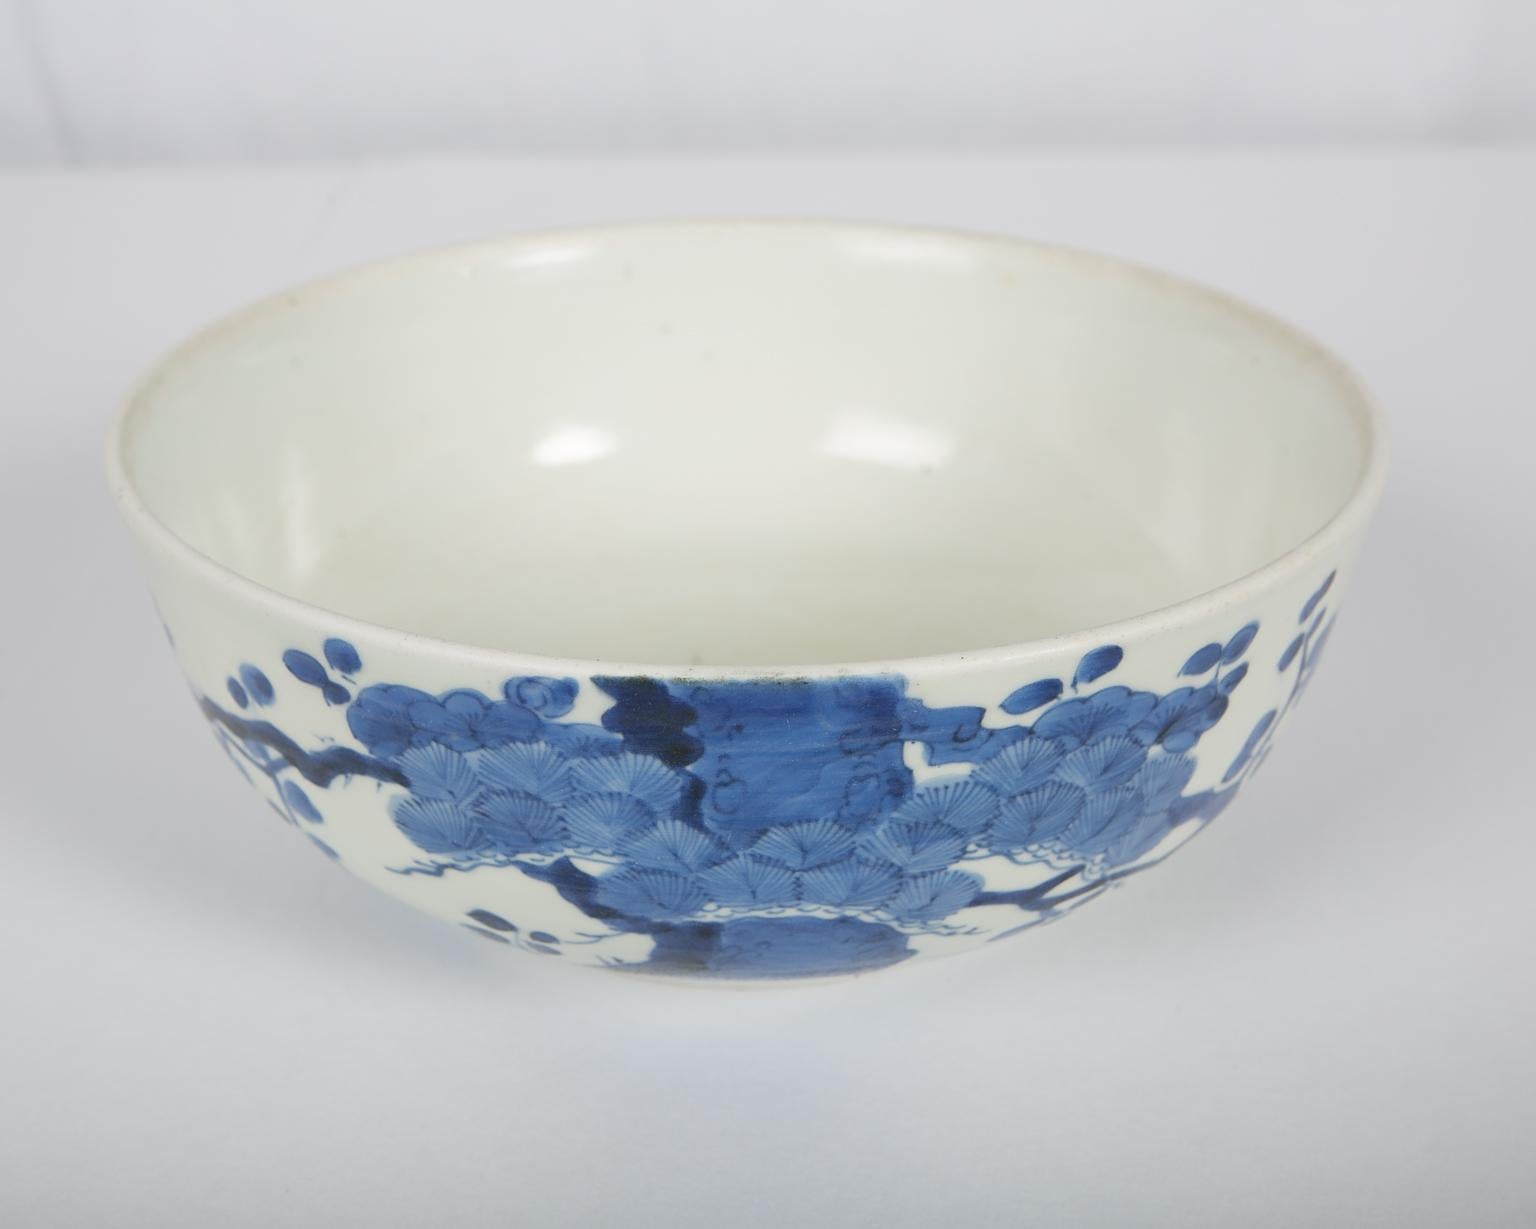 Antike japanische Schale aus blauem und weißem Porzellan um 1760 (18. Jahrhundert)